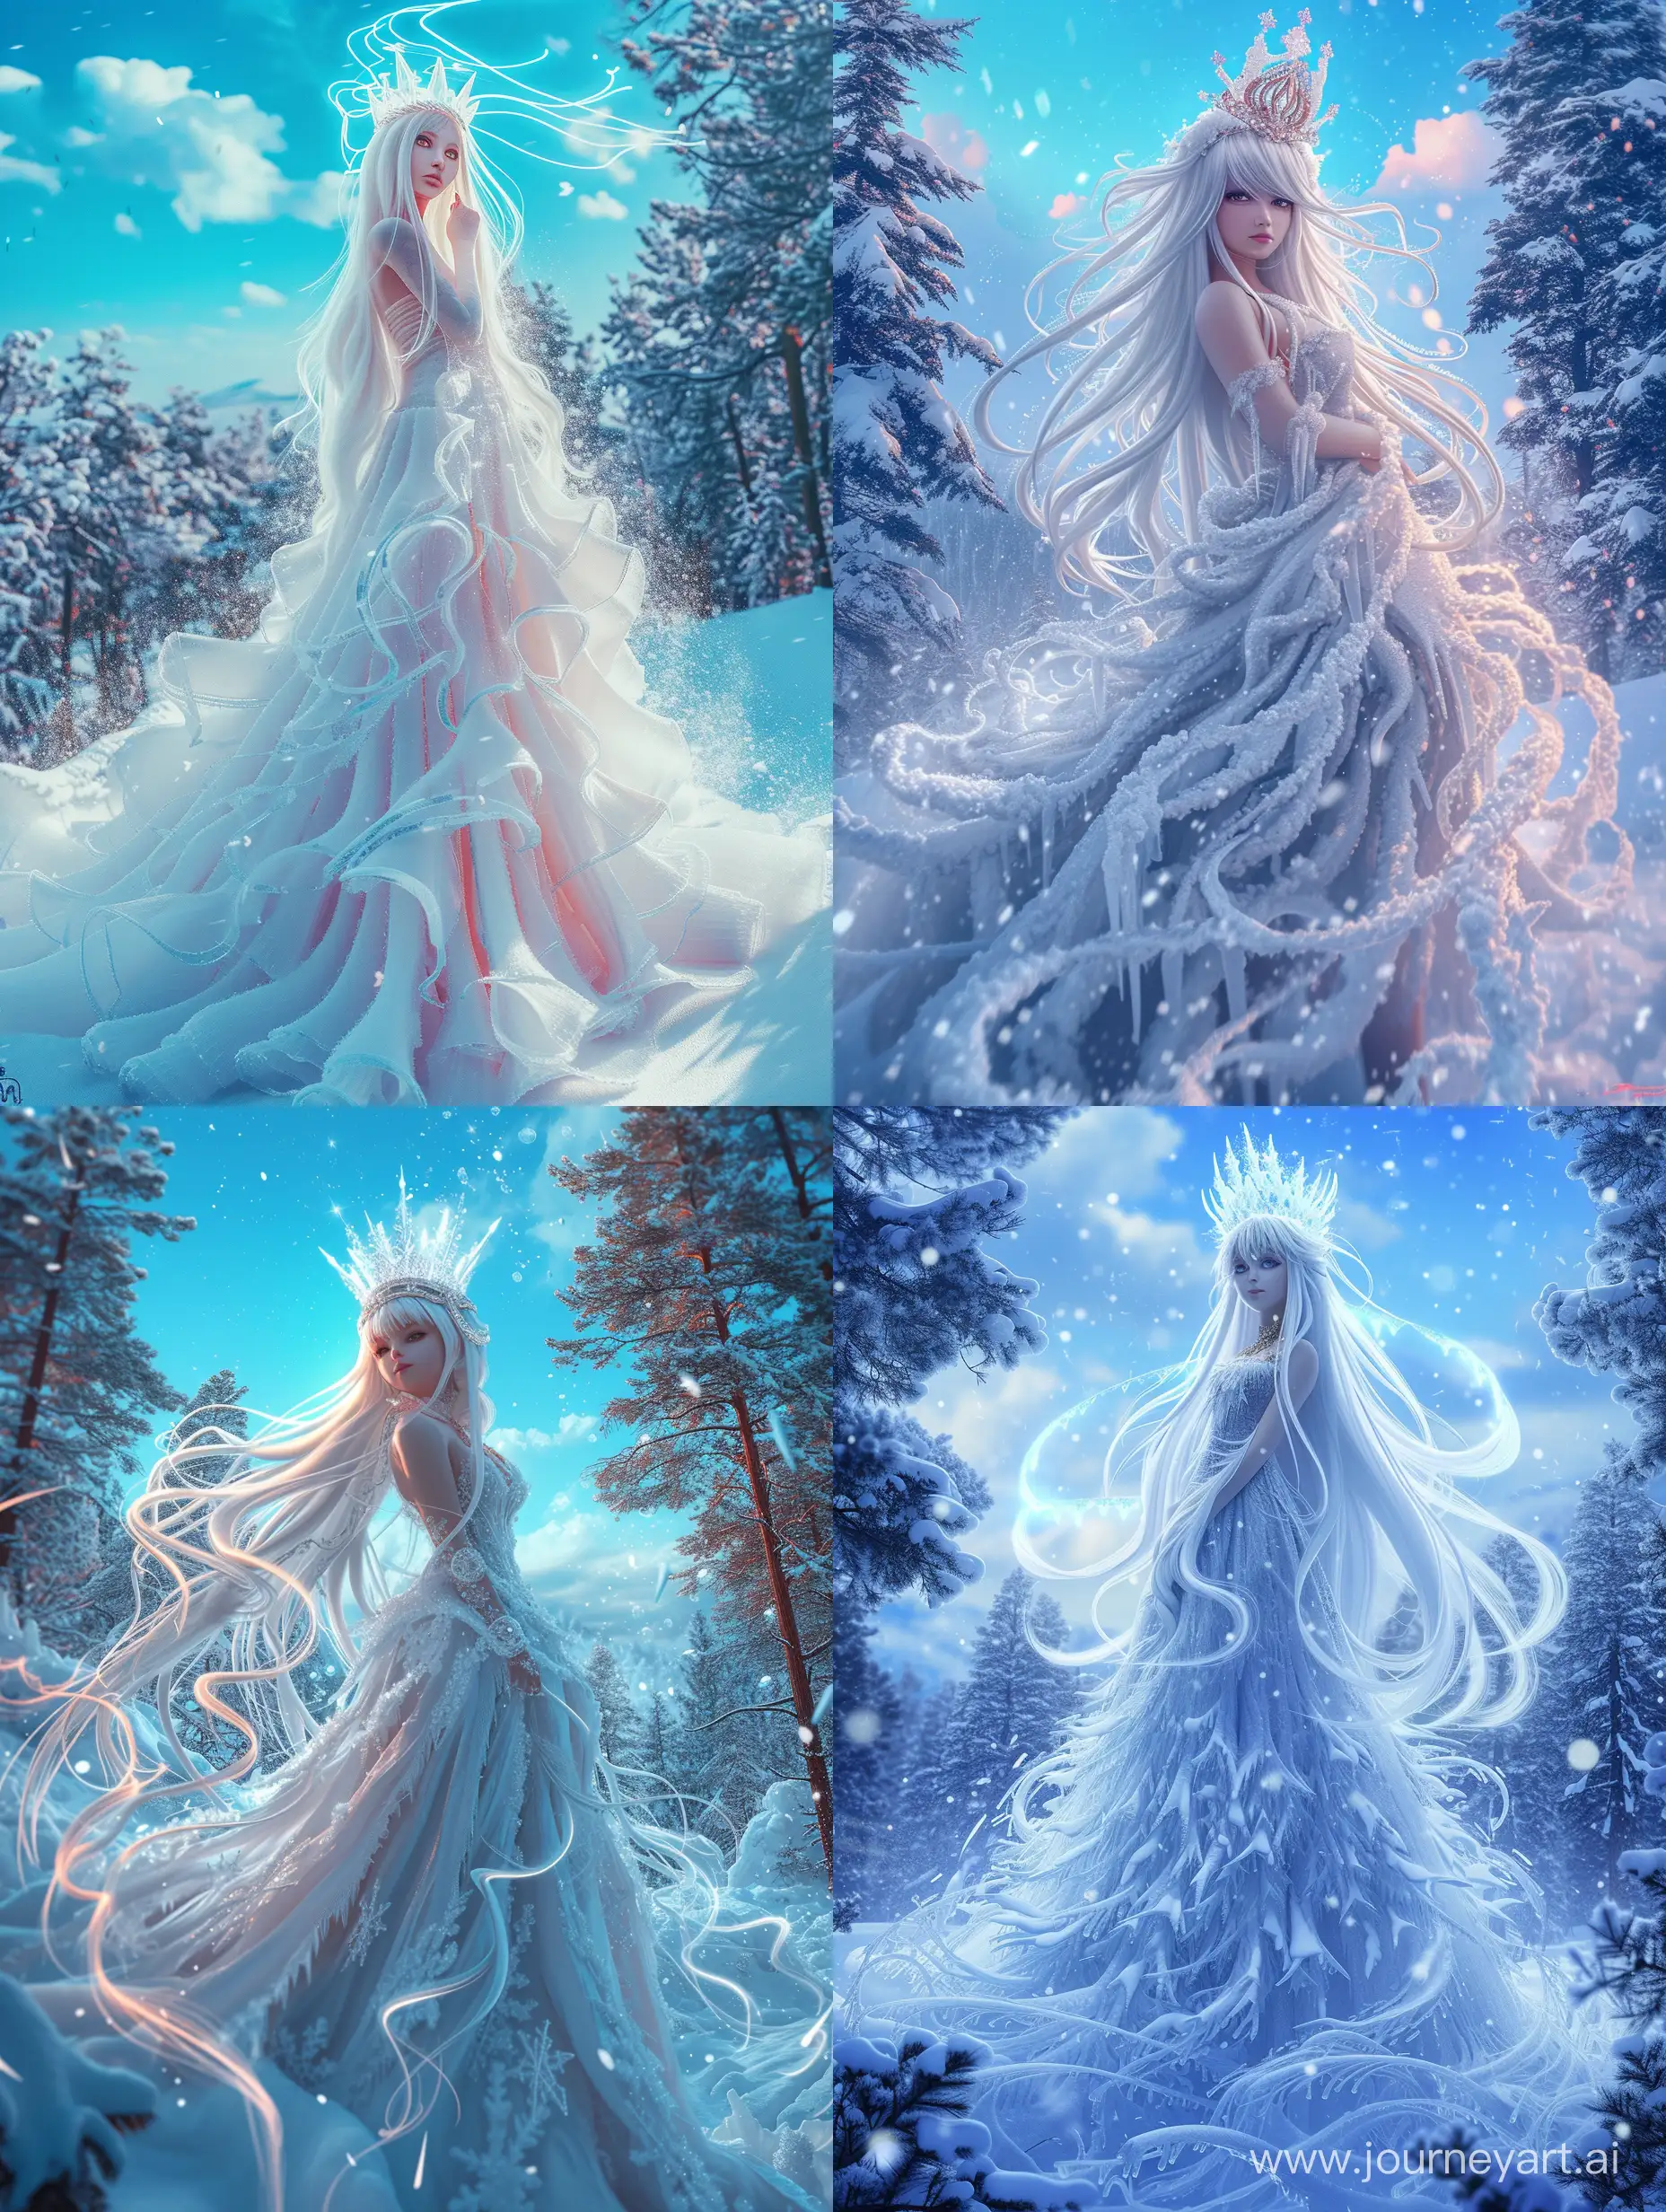 Королева-зима, невероятно красивая девушка в полный рост, с белыми длинными волосами, на голове корона из льда, в платье из снега в зимнем лесу, красивый пейзаж на фоне, синее небо, заснеженные деревья, продолжение платья из снега, вьюга завихряются у подола платья, неоновые переливы, высокое разрешение, эстетично, красиво, яркое освещение, фотореализм